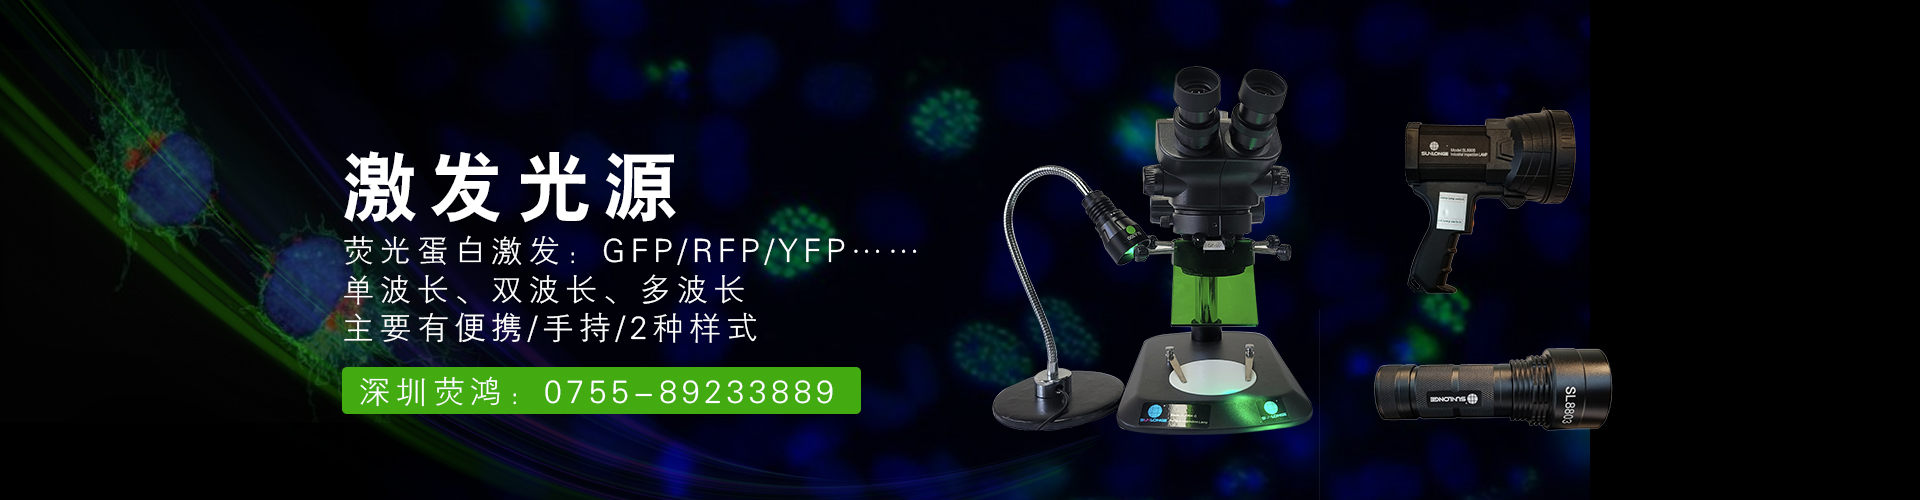 双波长显微镜荧光激发光源SLF8806